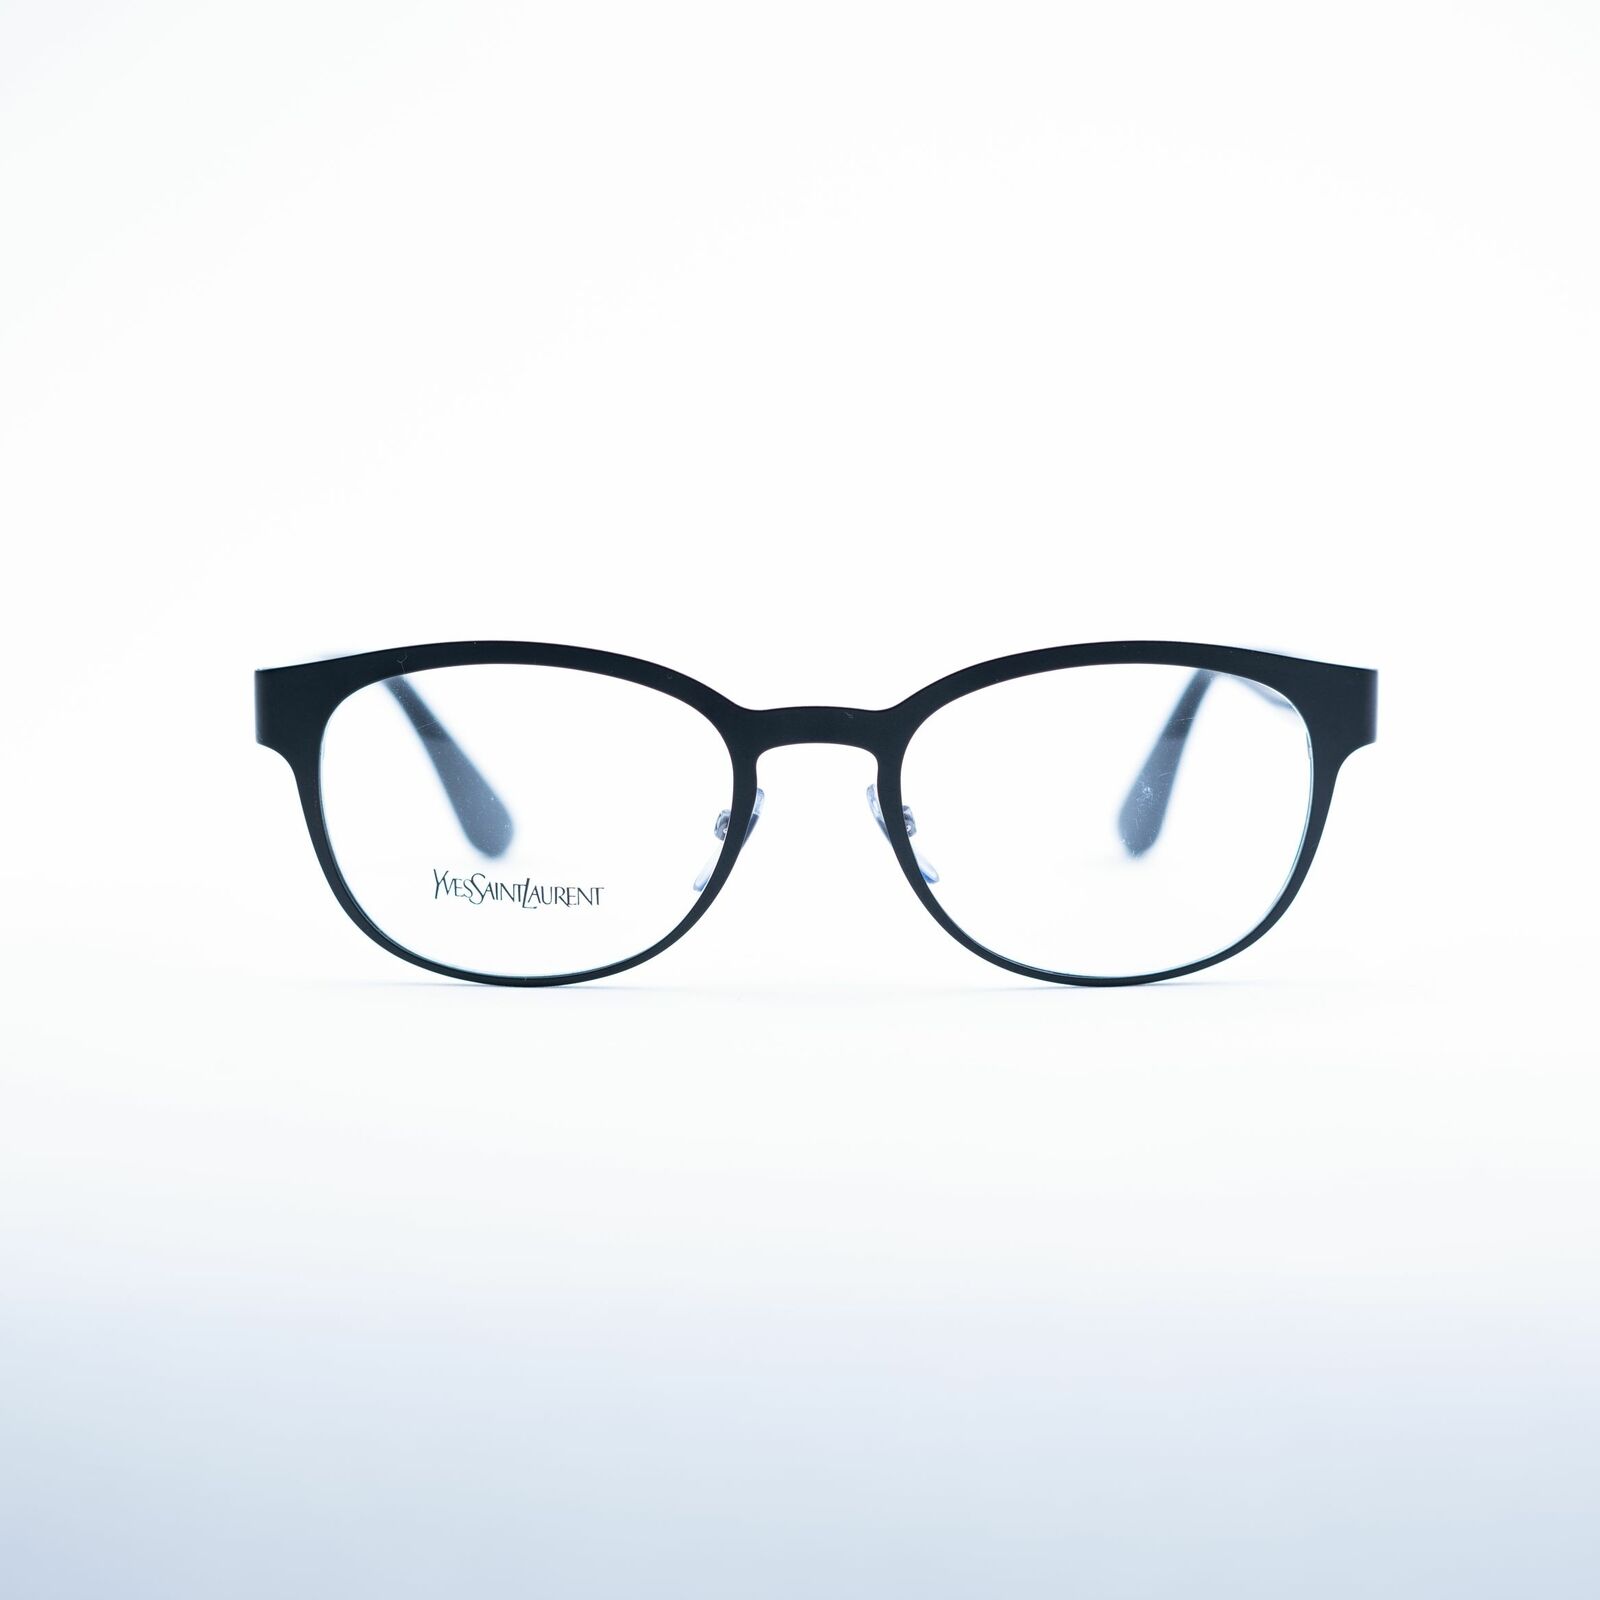 Yves Saint Laurent YSL 2356 Fassung Brille Brillengestell Brillenfassung